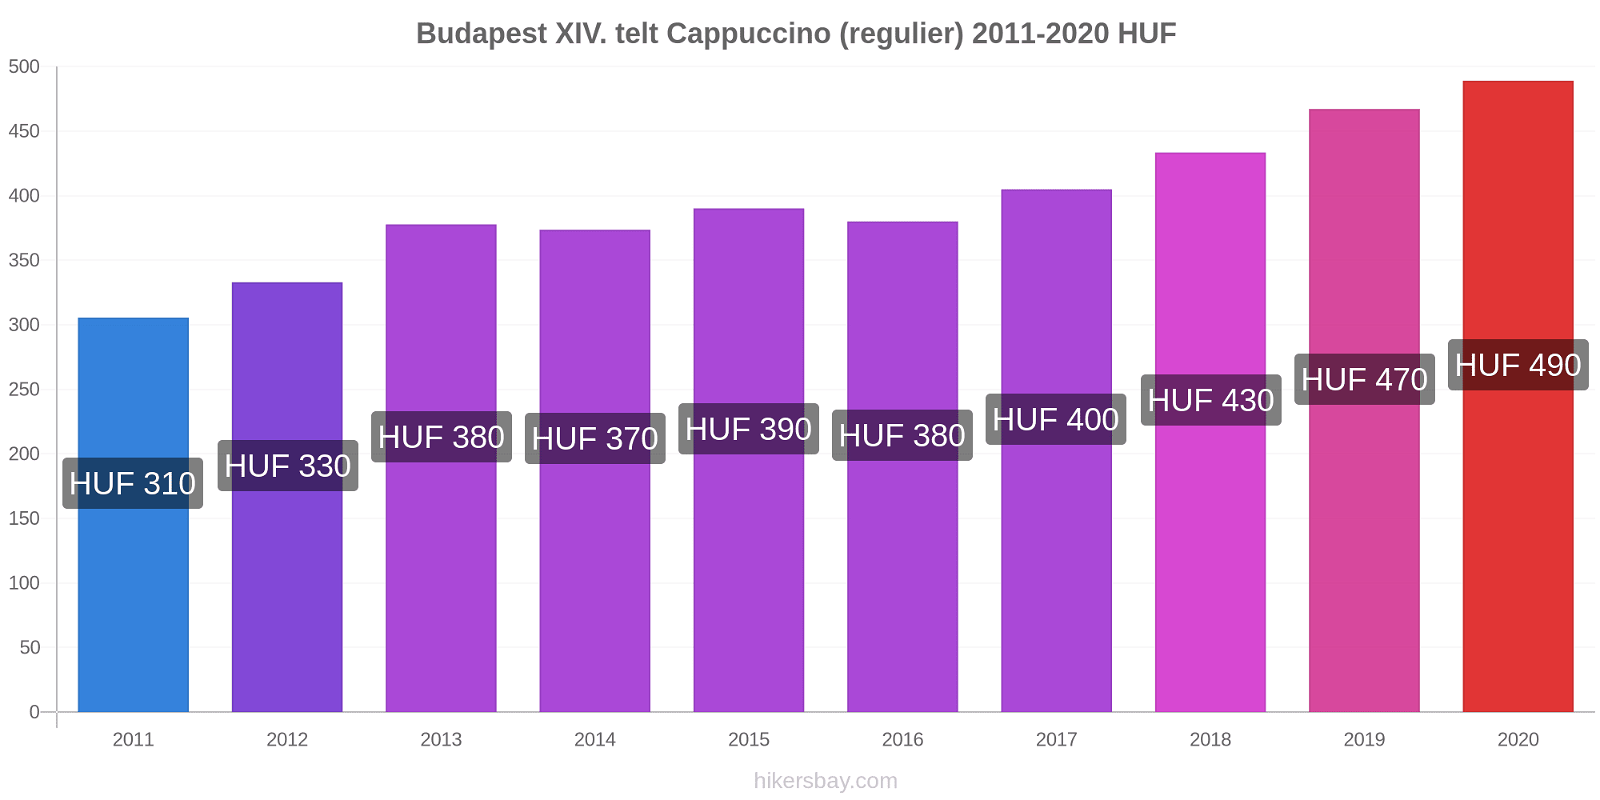 Budapest XIV. telt prijswijzigingen Cappuccino (regelmatige) hikersbay.com